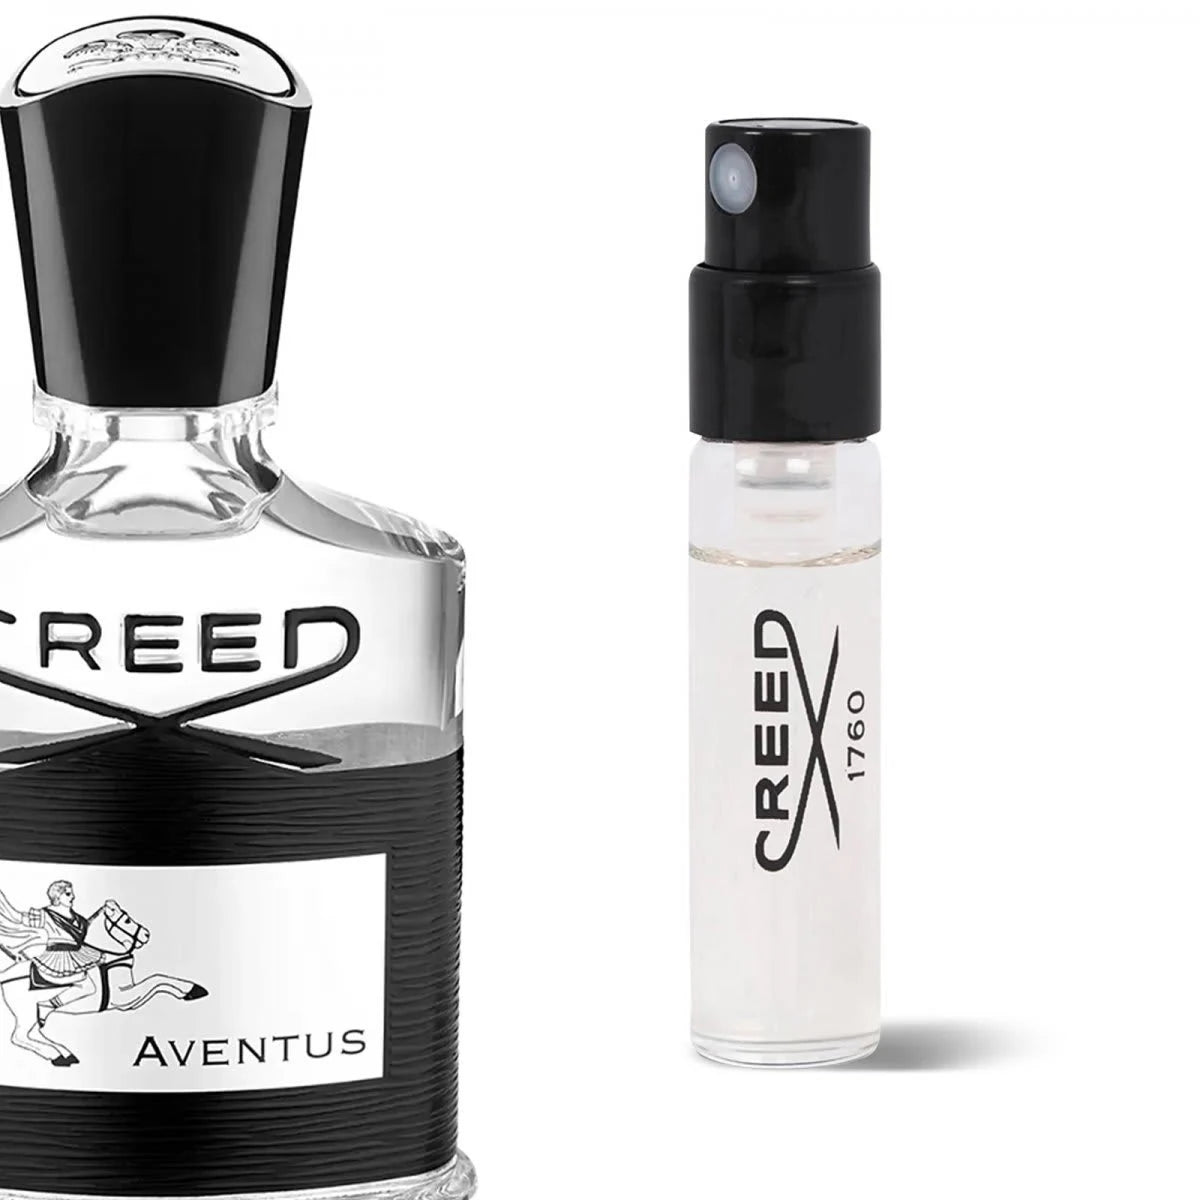 Creed Aventus hivatalos parfümminták